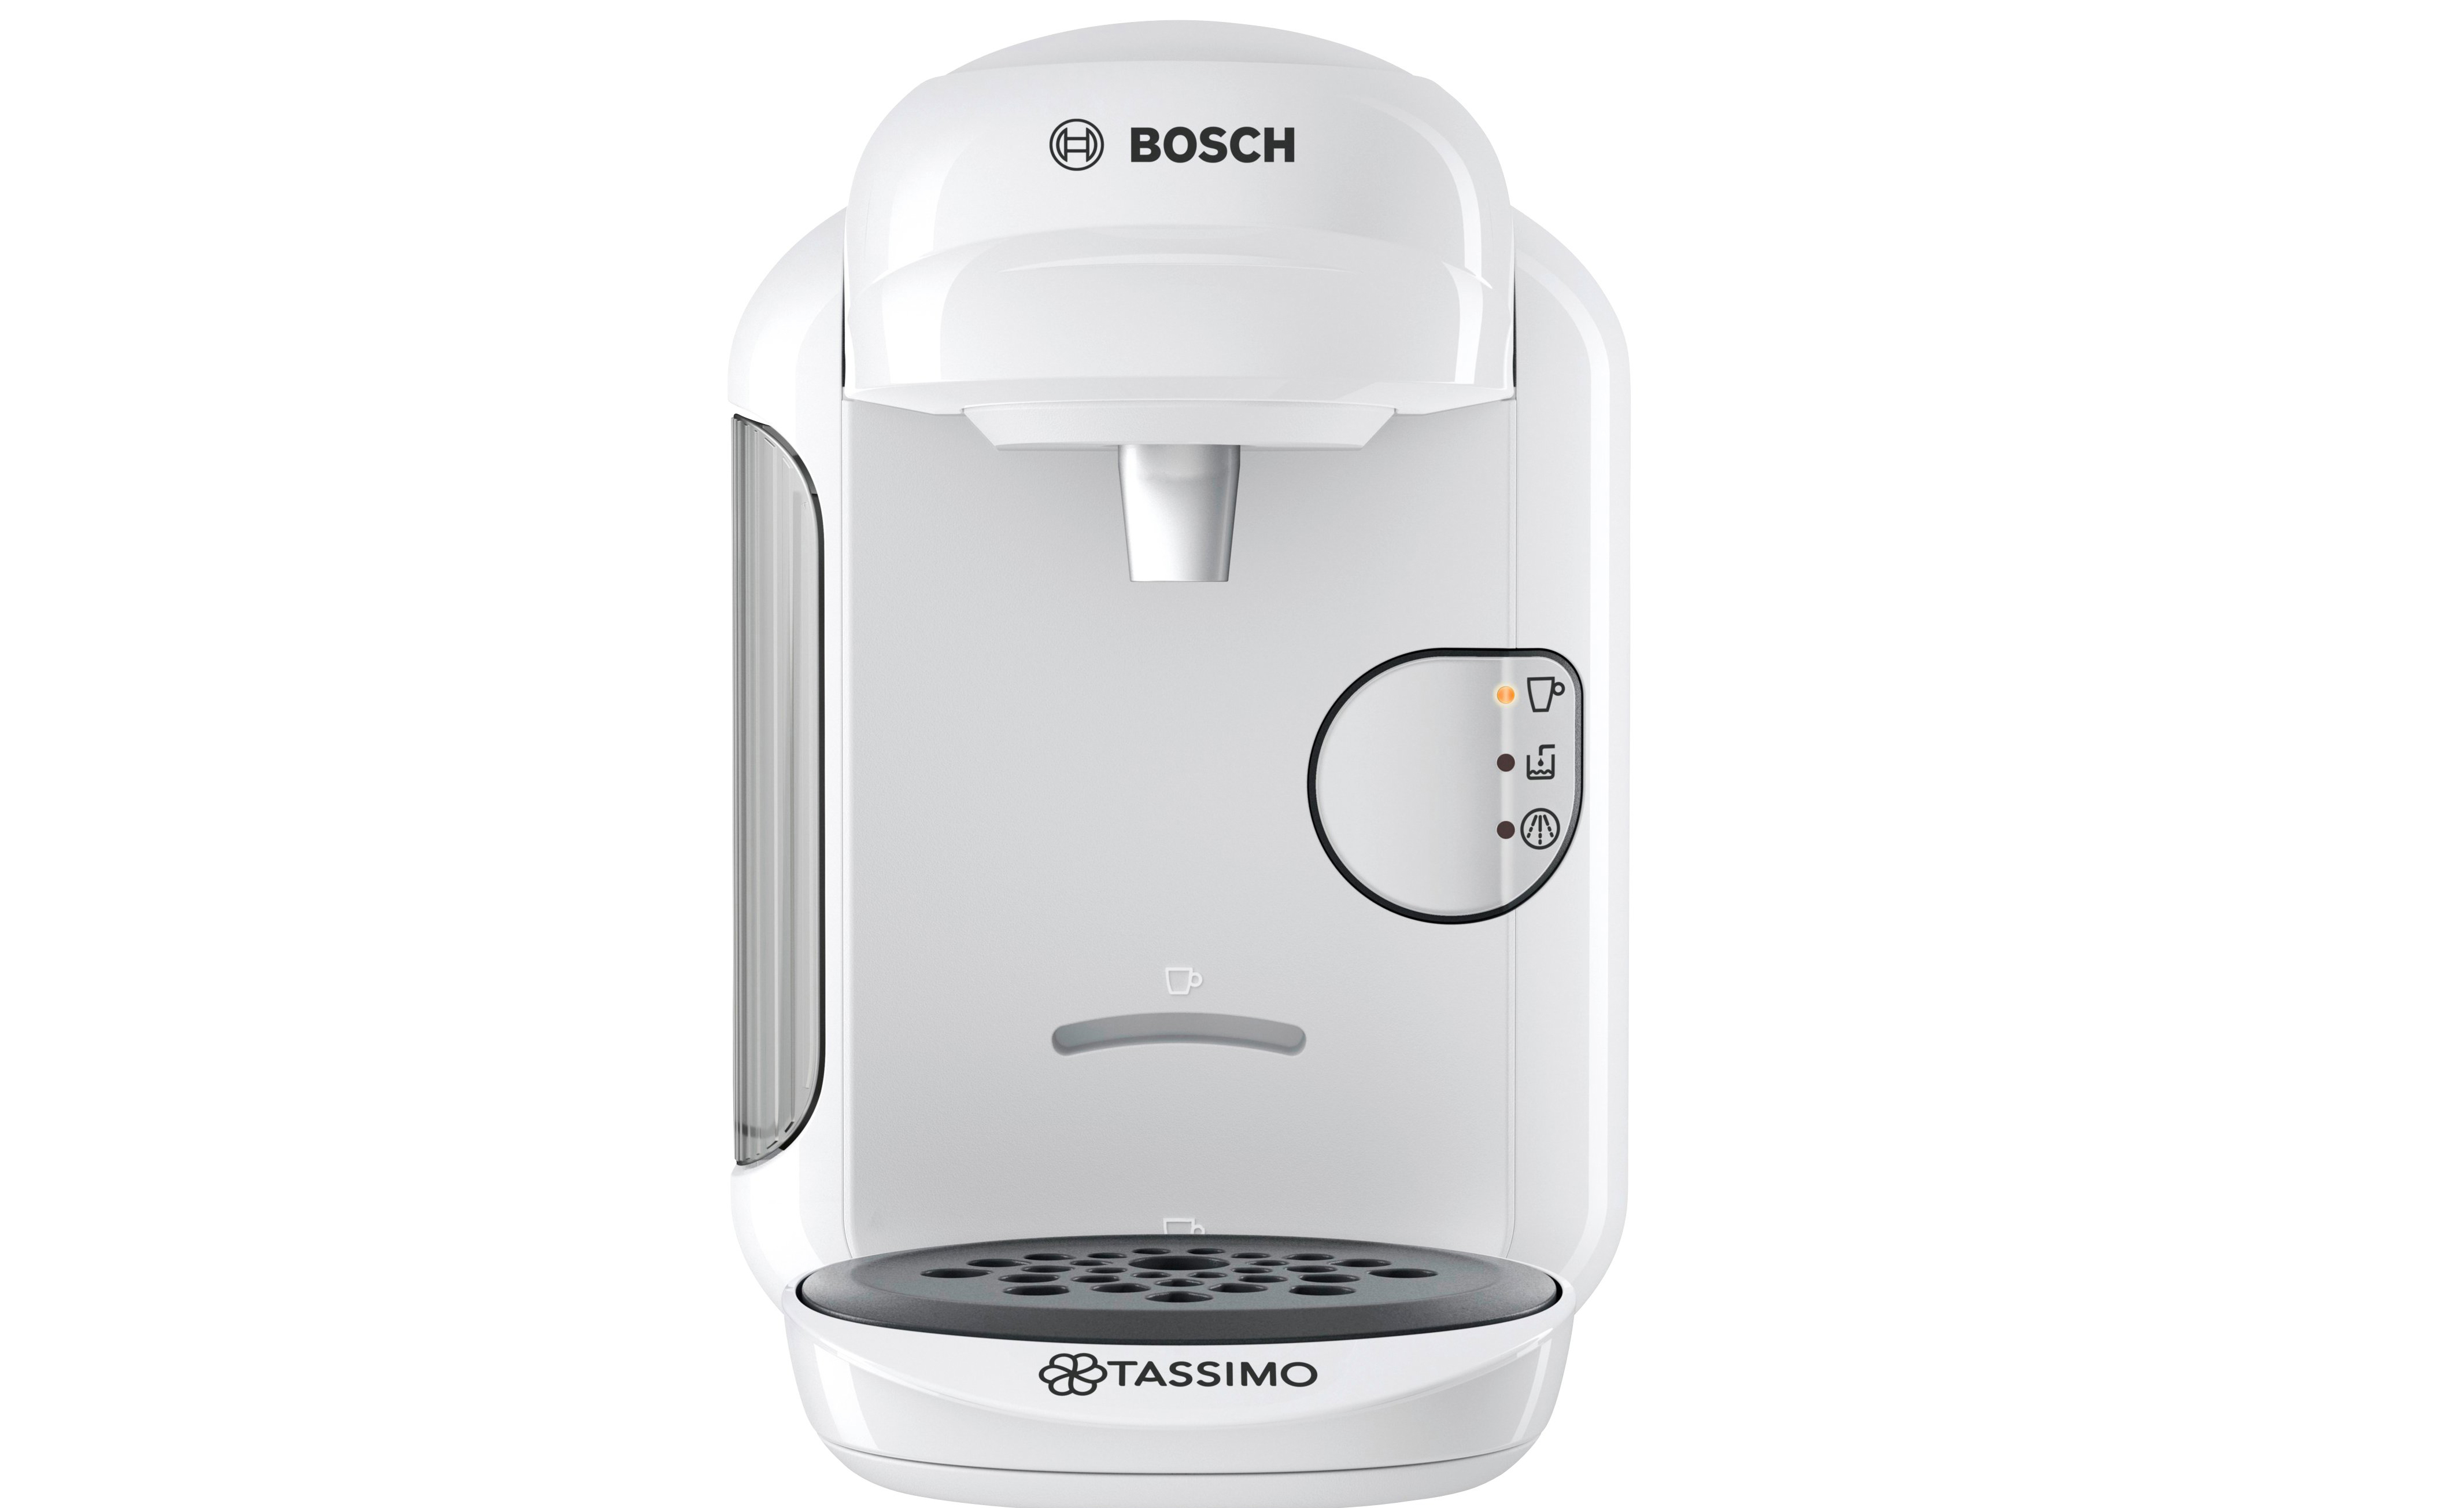 Bosch TAS 1401/1402/1403/1404/1407 Tassimo